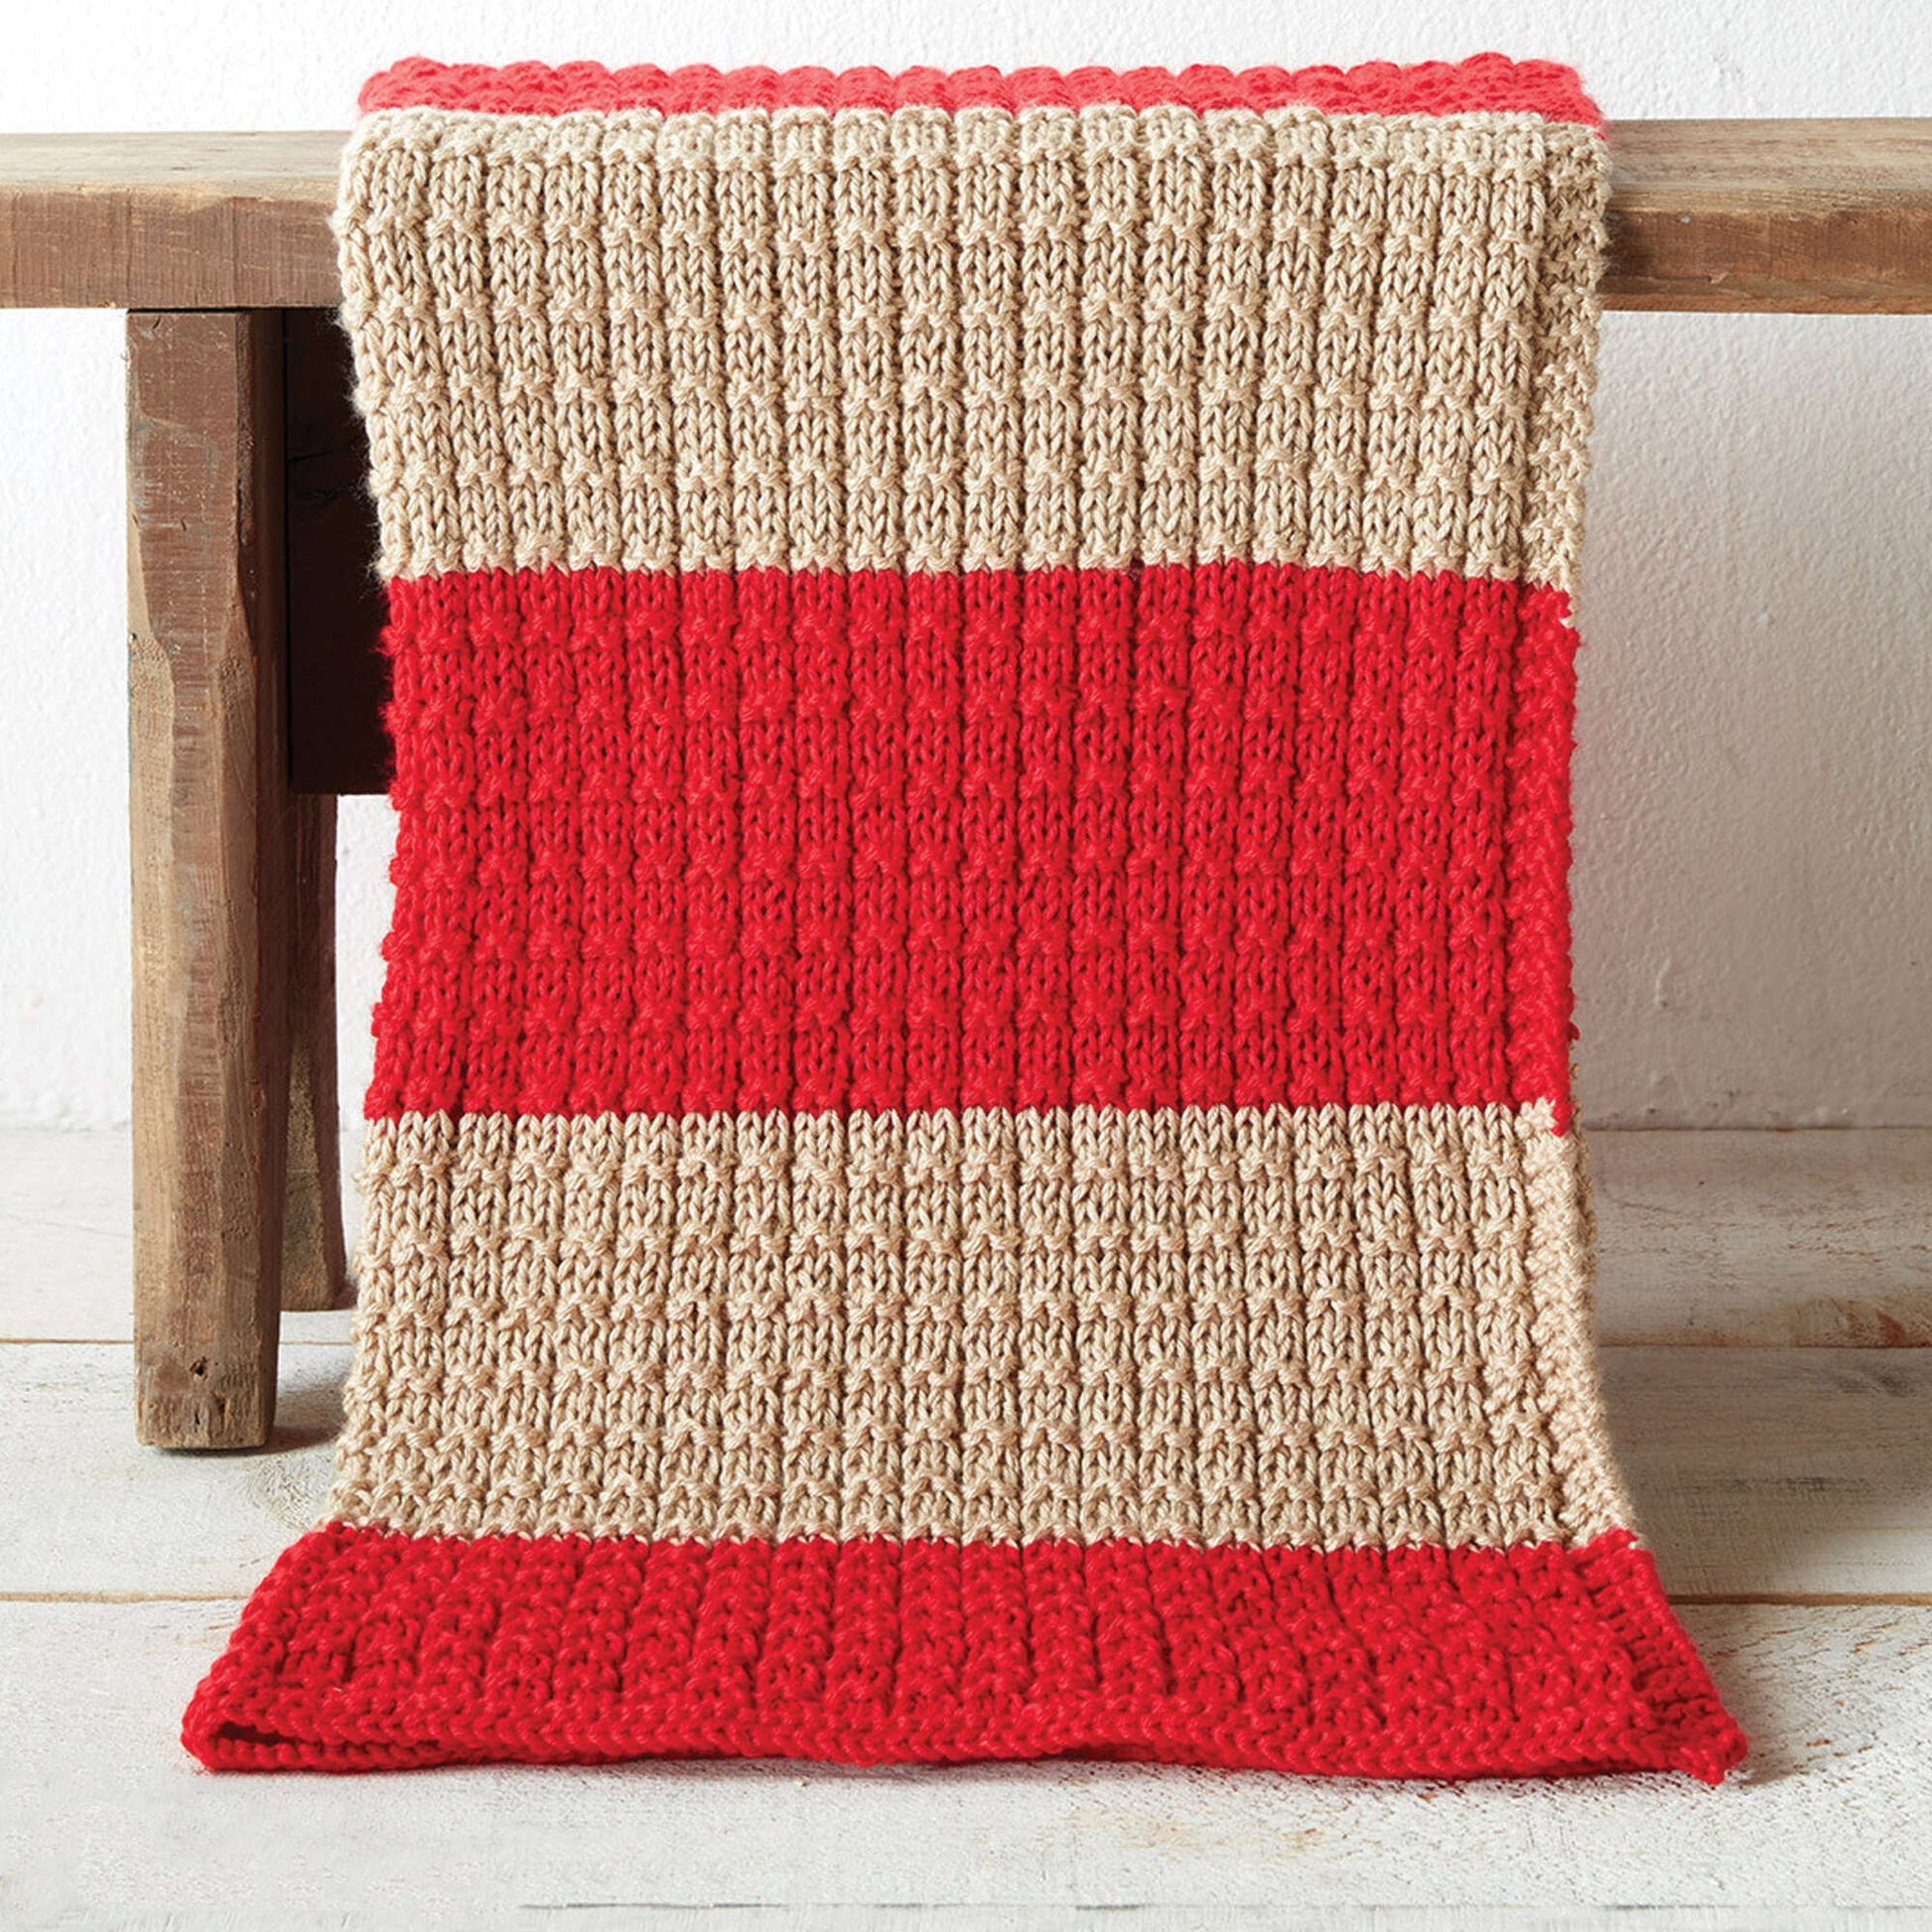 Free Caron Easy Breezy Knit Blanket Pattern